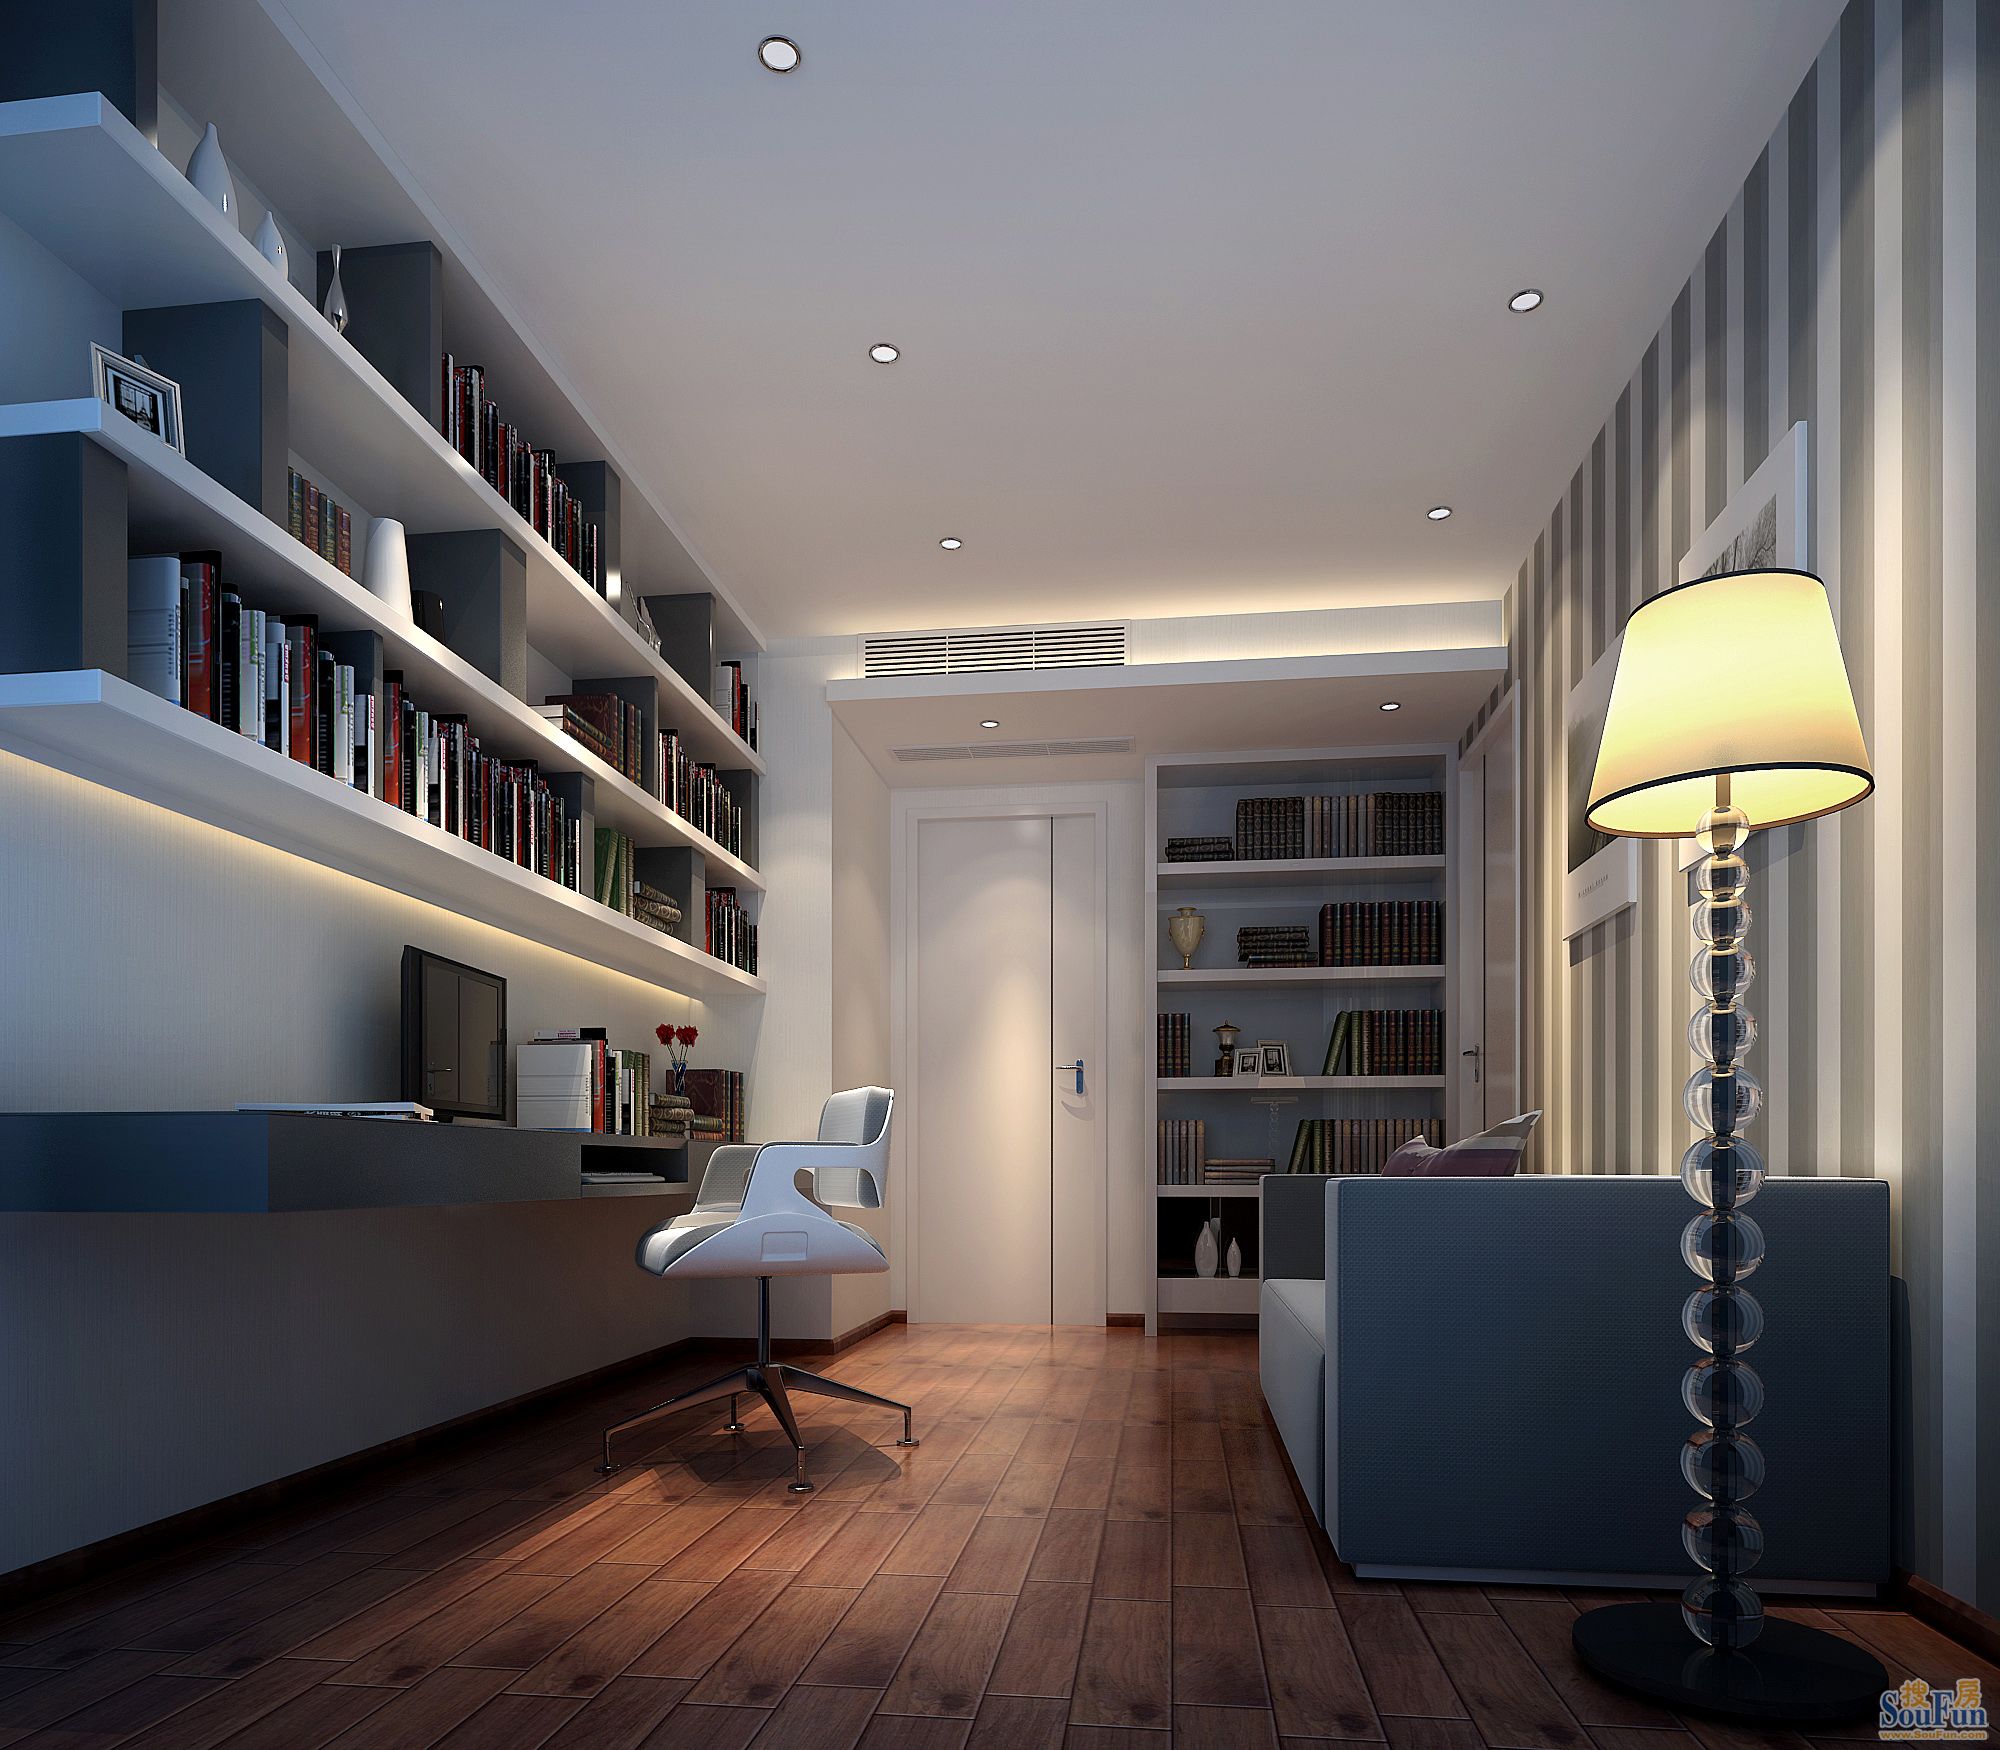 书房效果图:整个空间光线明朗,灯光柔和,加以现代元素的烘托,使整个